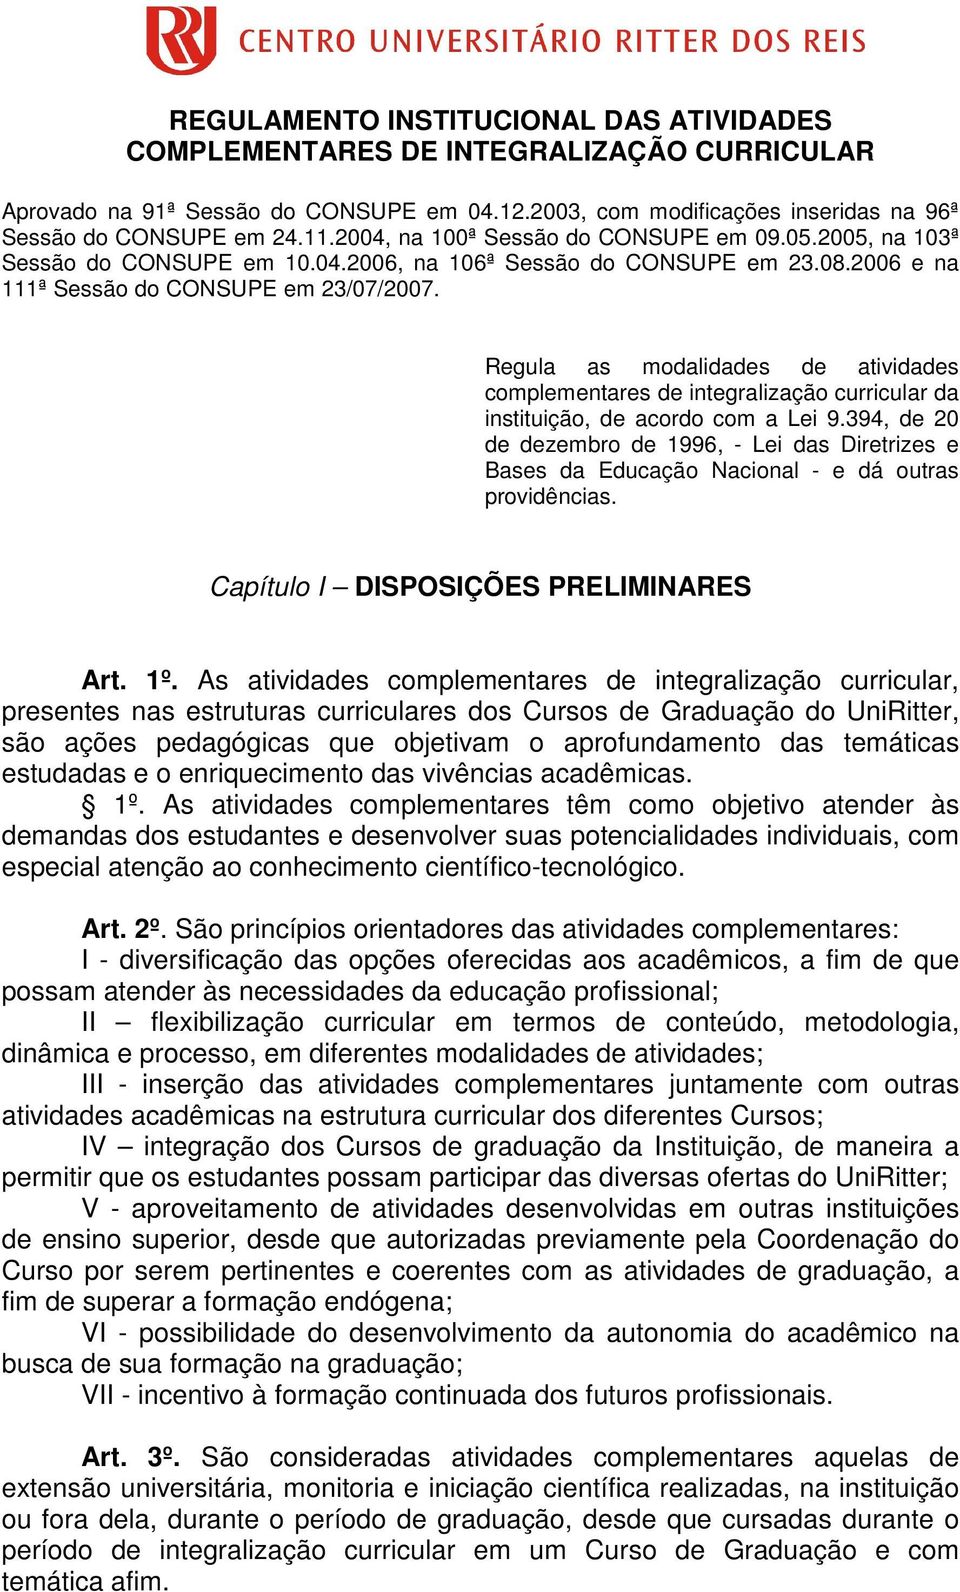 Regula as modalidades de atividades complementares de integralização curricular da instituição, de acordo com a Lei 9.